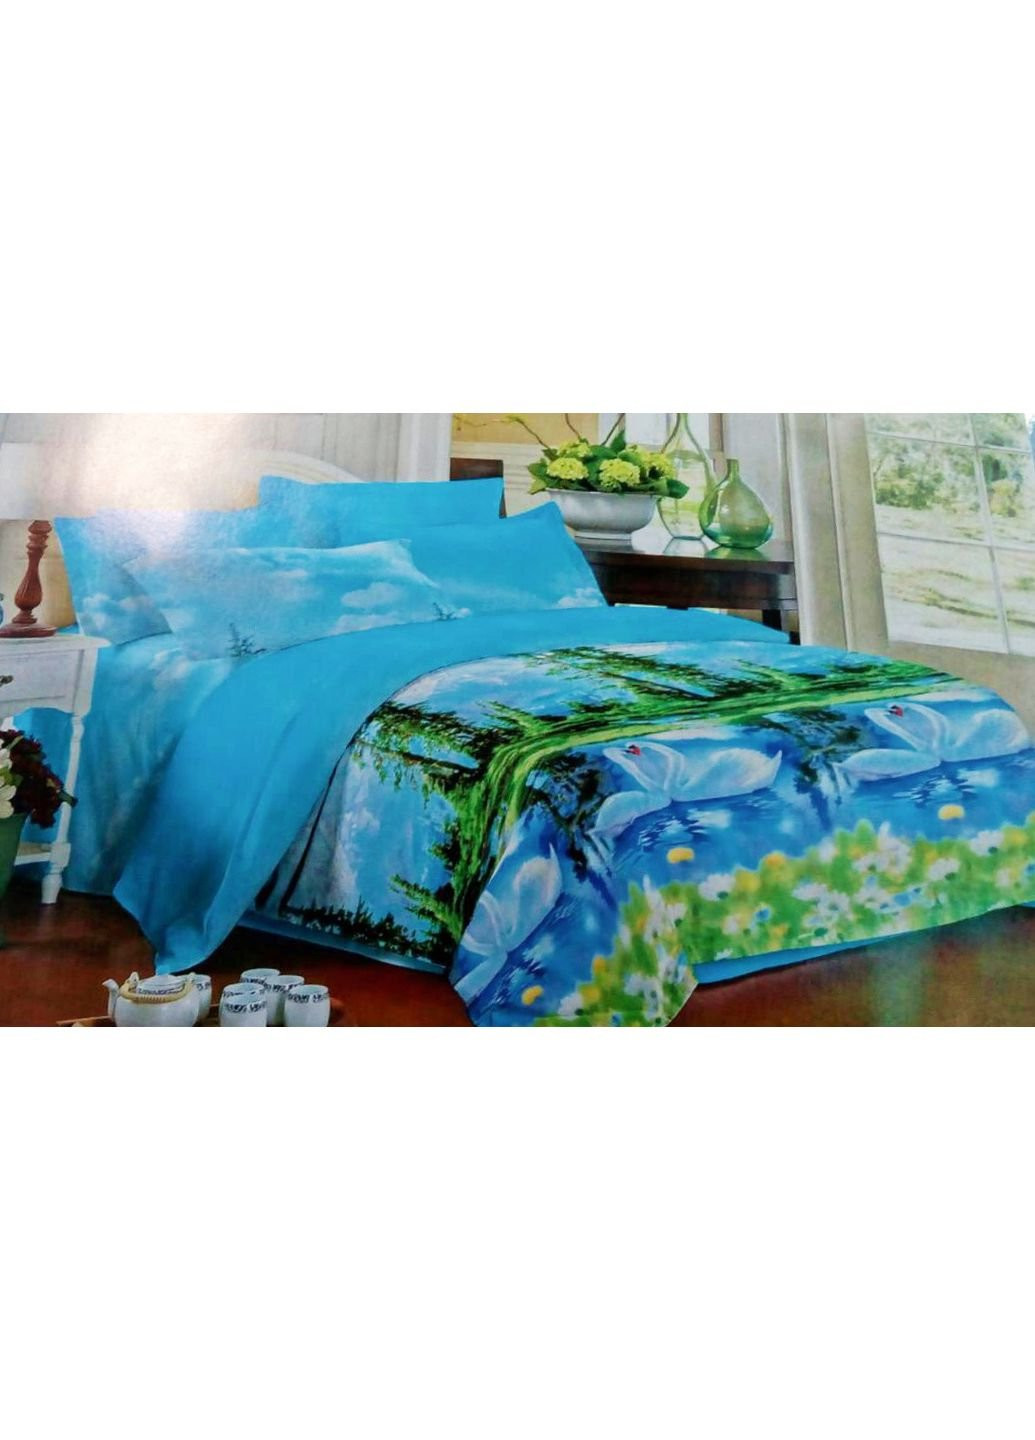 Комплект постельного белья от украинского производителя Polycotton Двуспальный 90925 Moda (253658634)